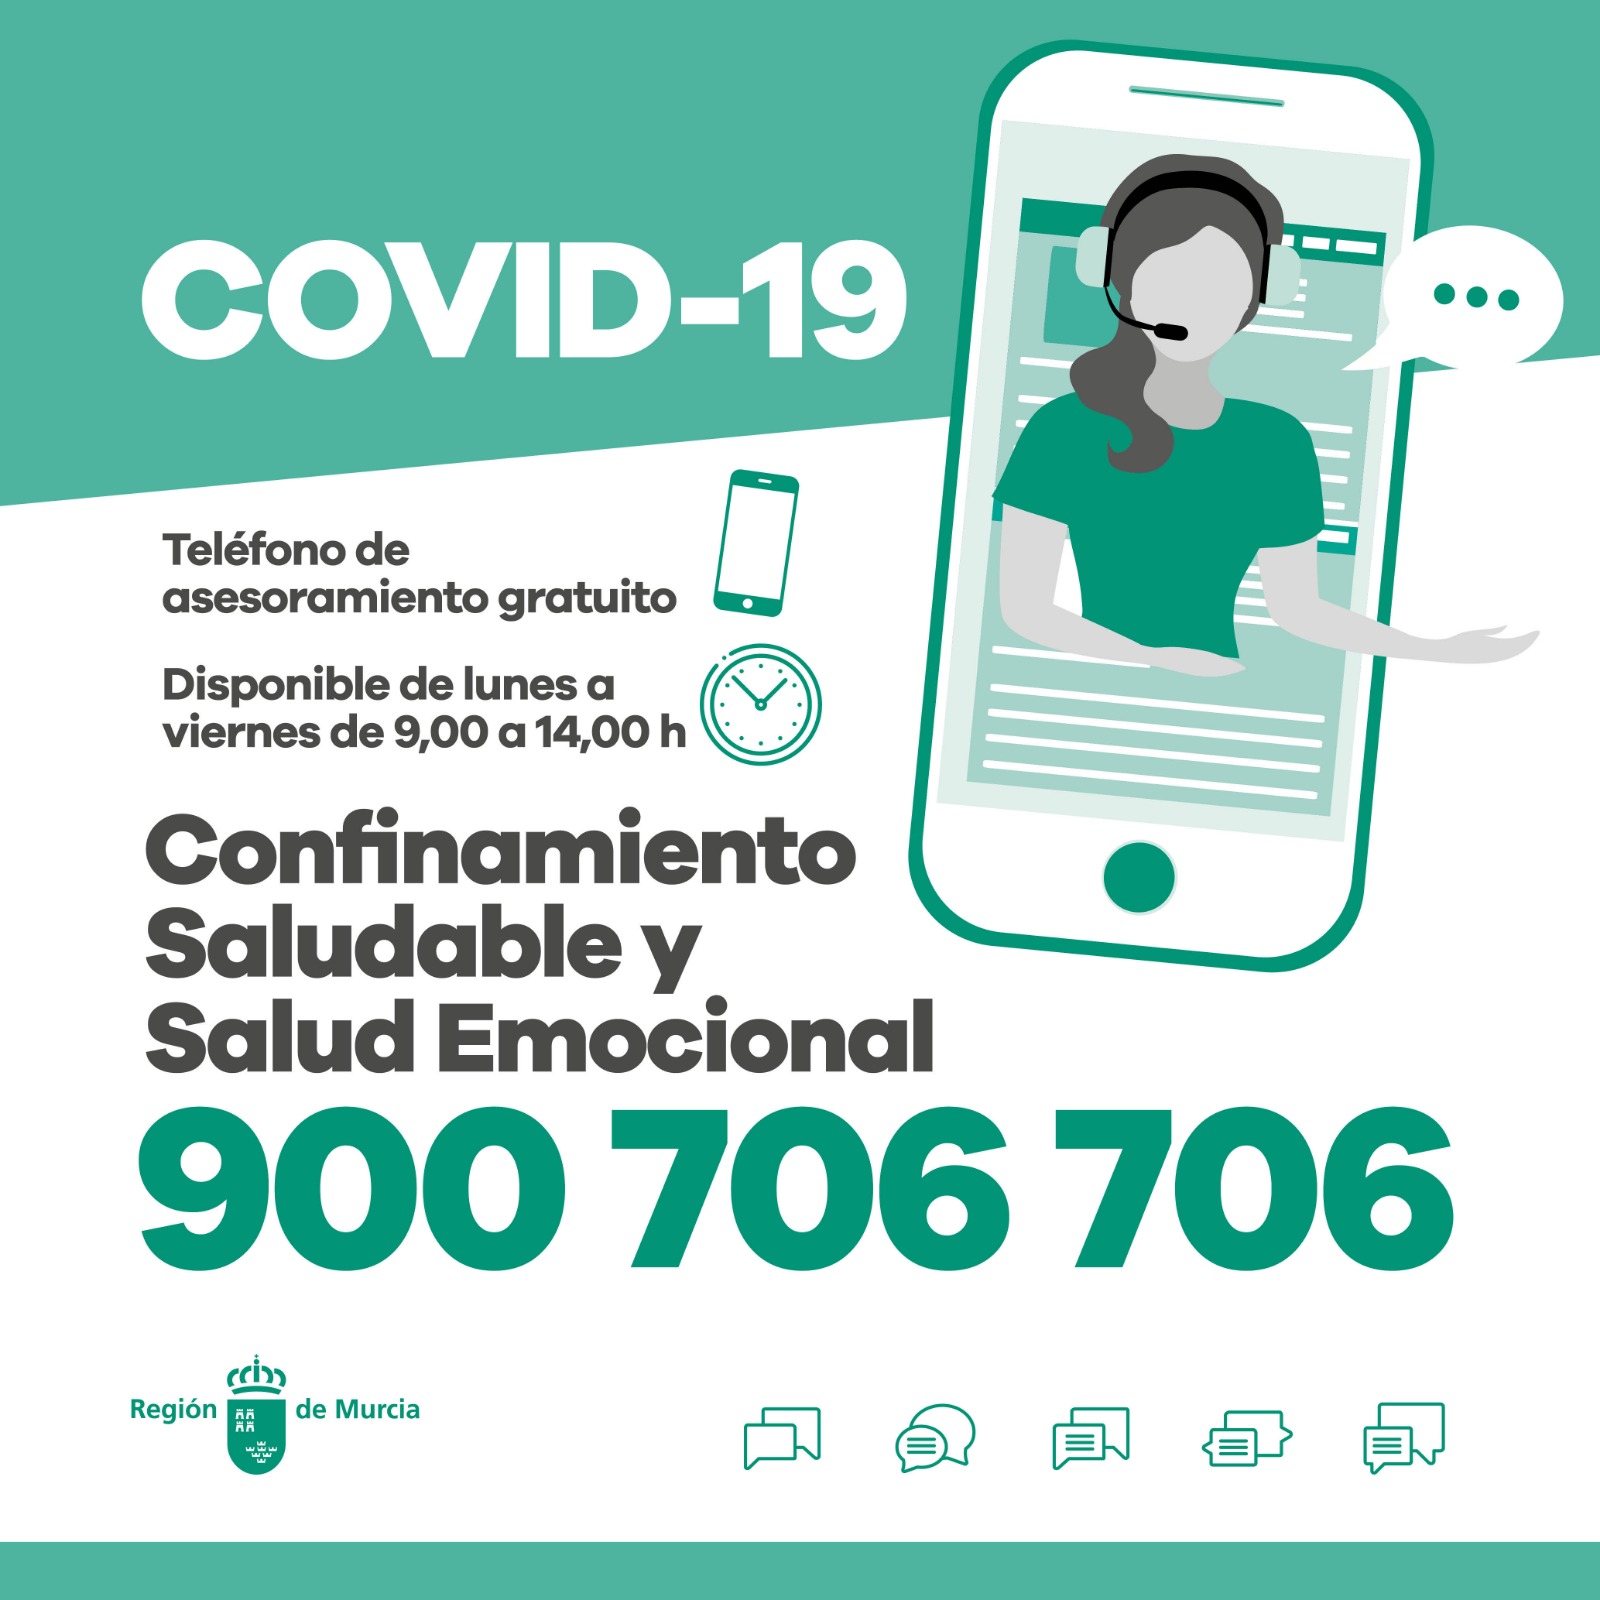 foto: Teléfono de asesoramiento gratuito para un confinamiento saludable y salud emocional por COVID-19  y otros documentos de interés